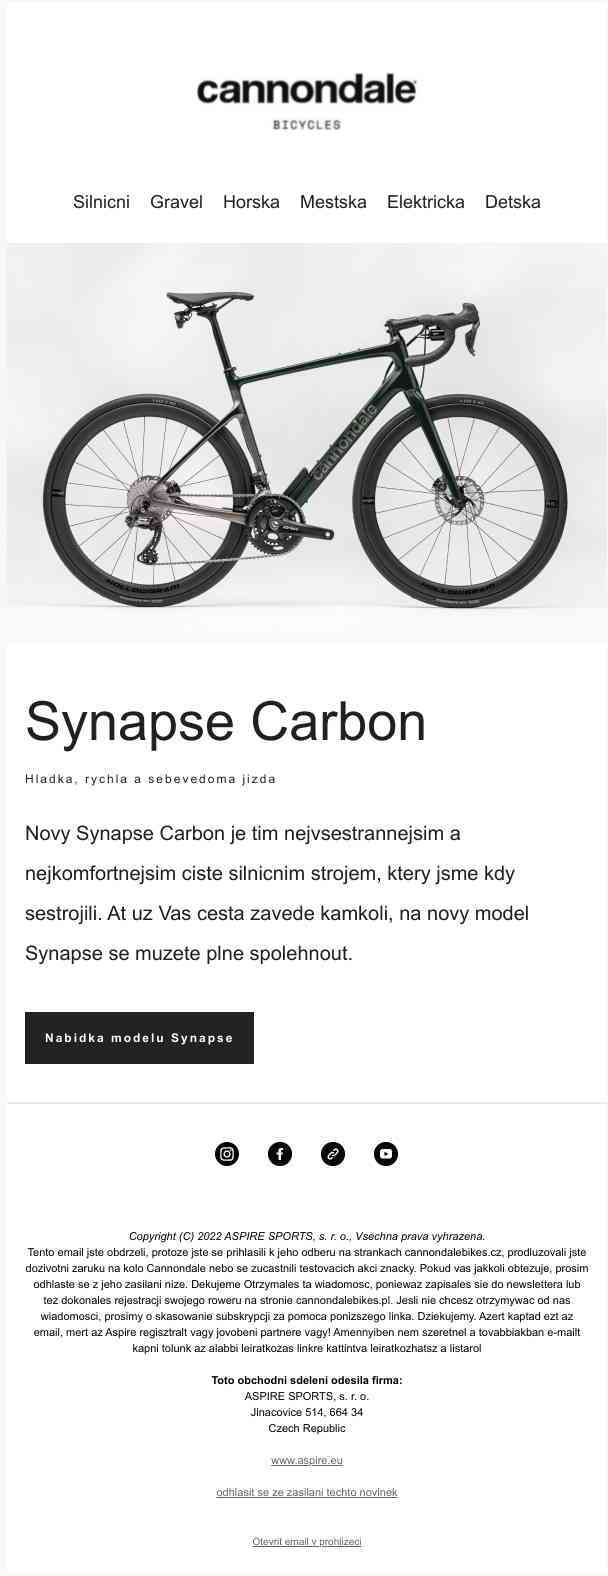 Představujeme Vám nový Cannondale Synapse Carbon